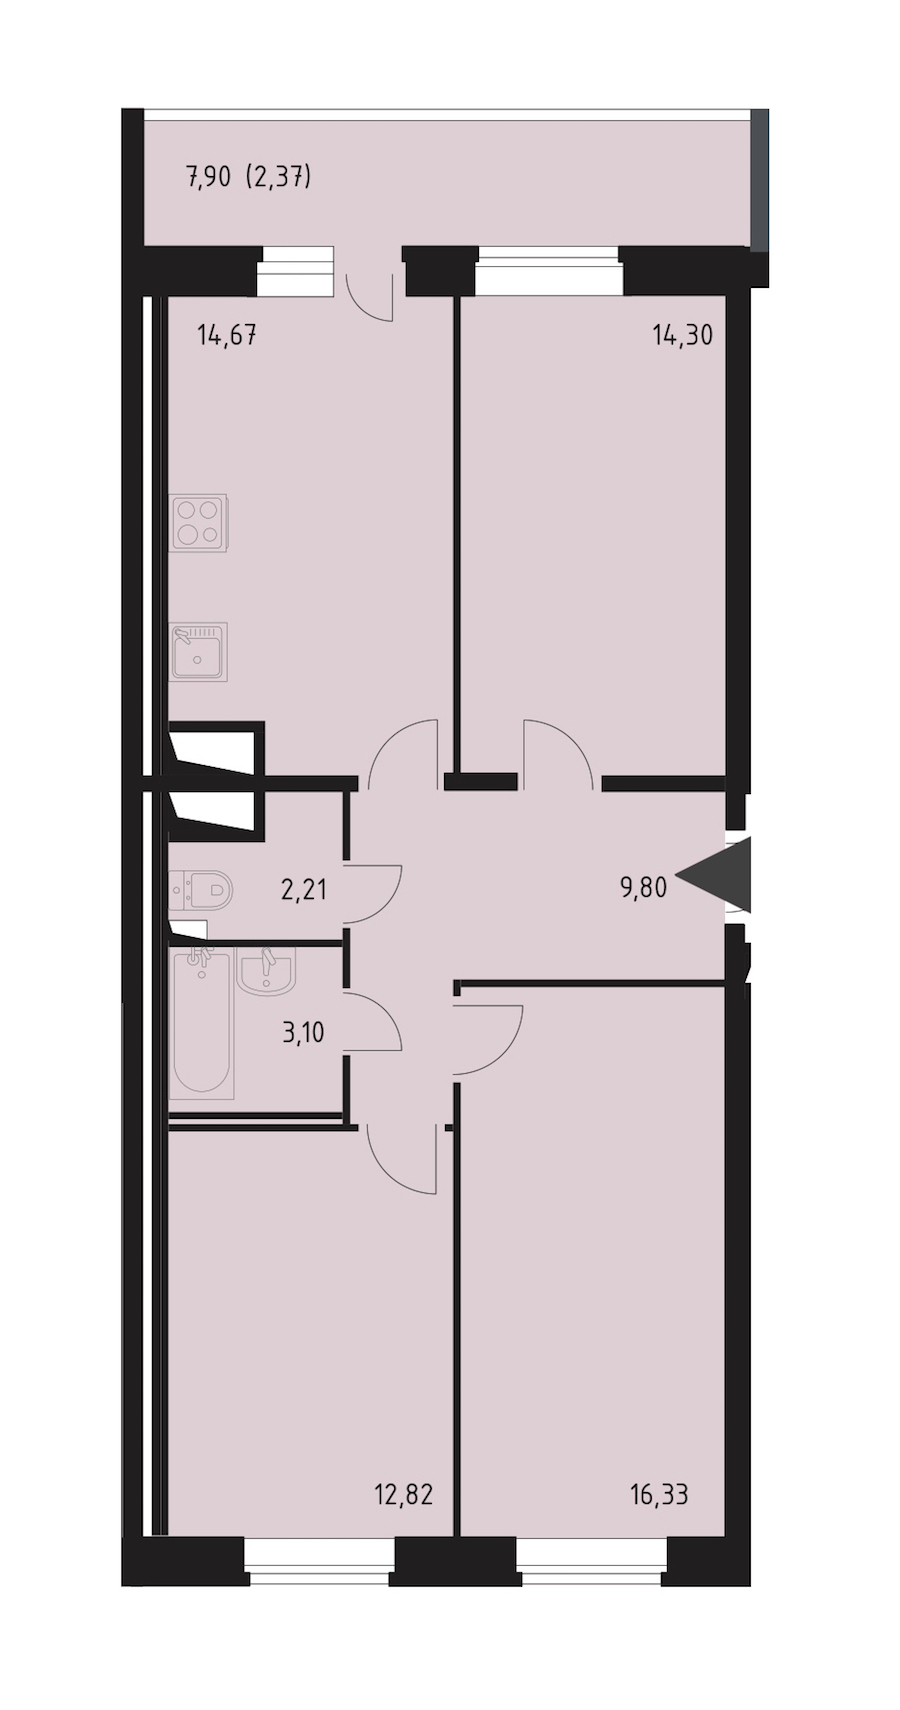 Трехкомнатная квартира в СПб Реновация: площадь 75.12 м2 , этаж: 23 – купить в Санкт-Петербурге